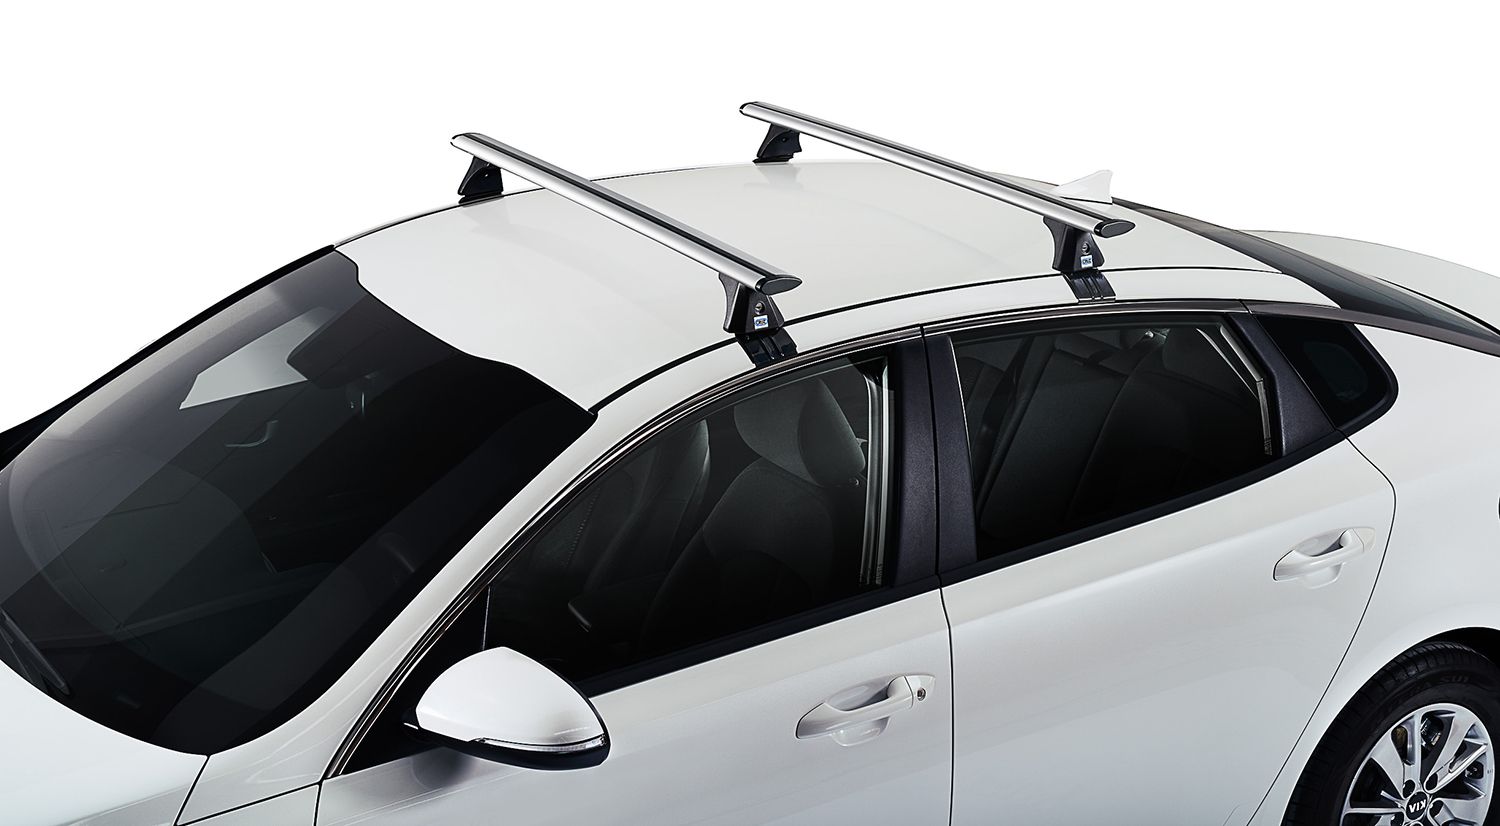 Portaesquís magnético Cruz Roof para coche